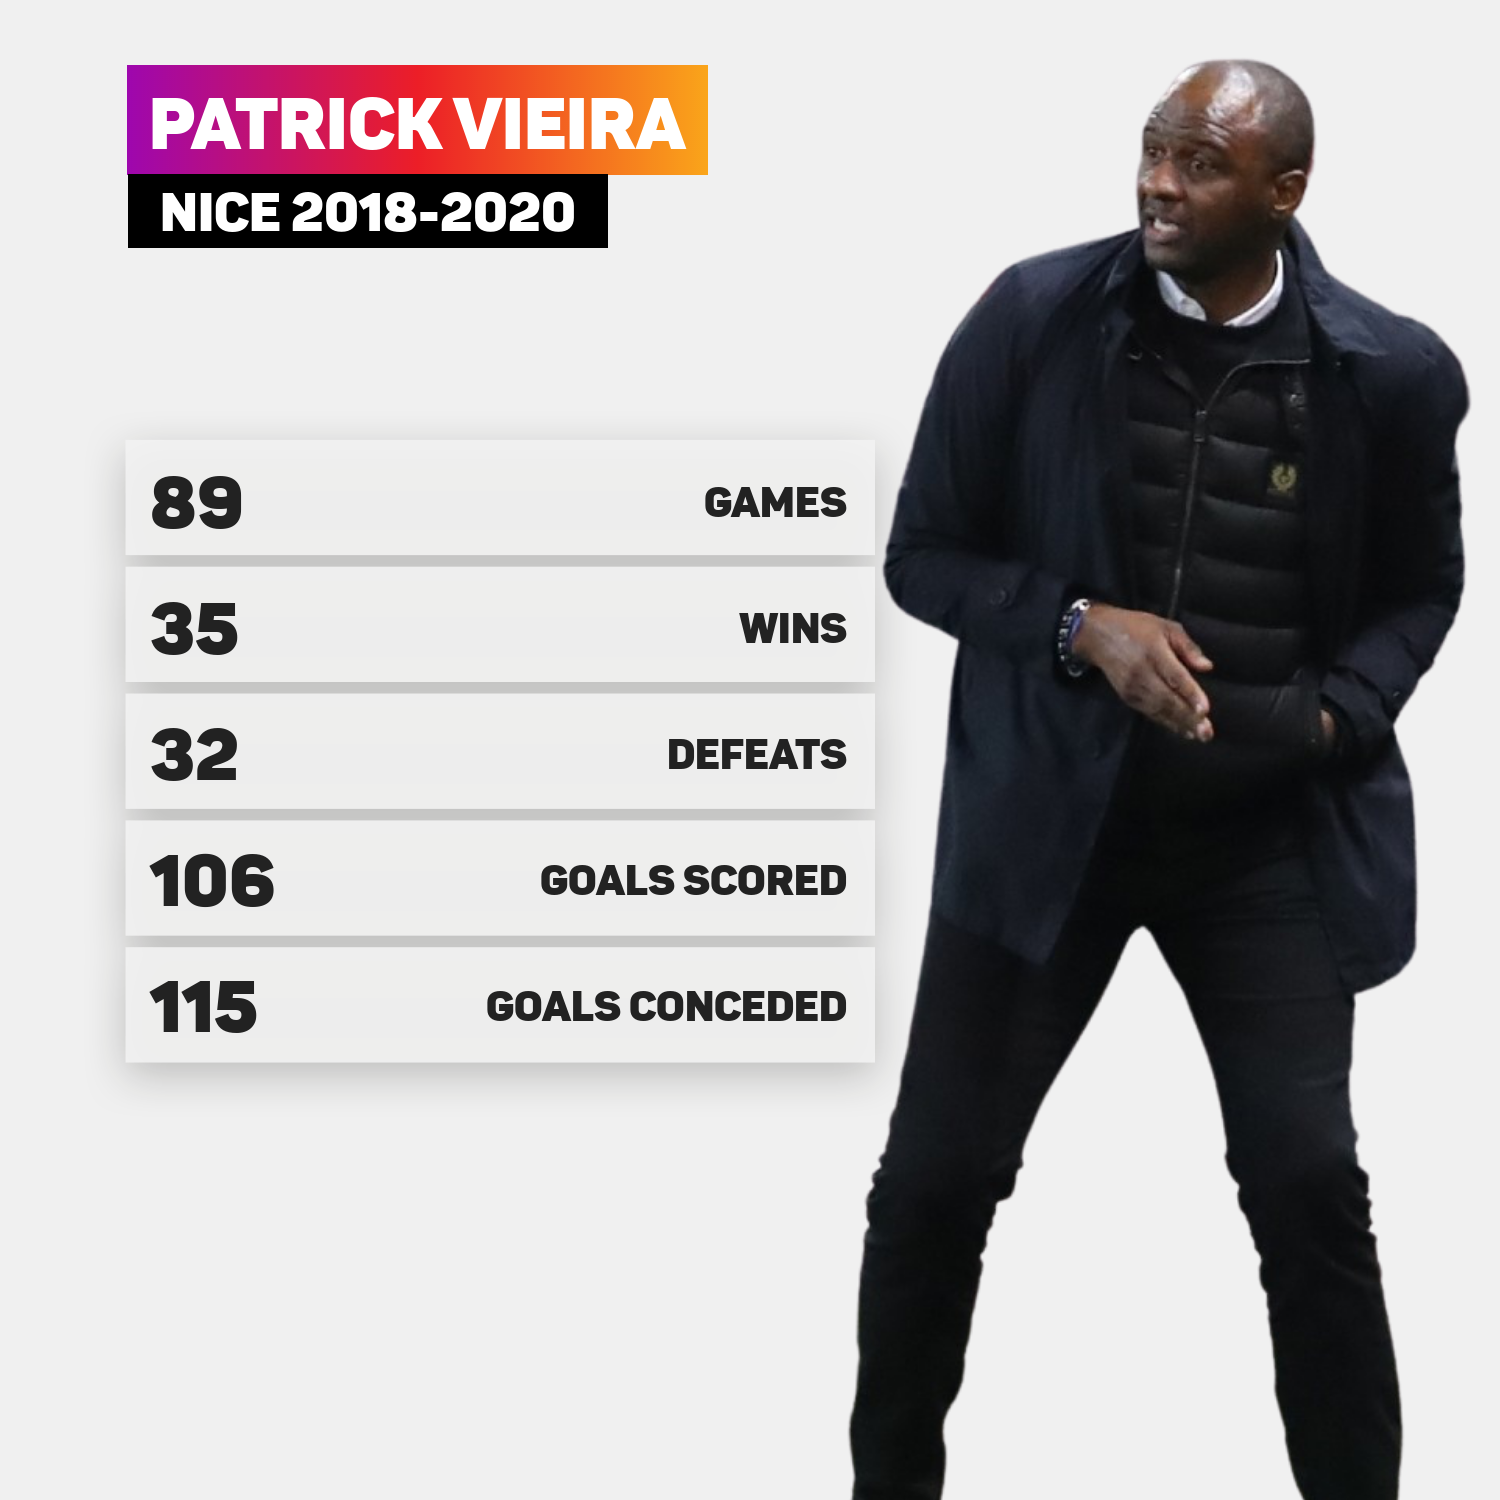 Patrick Vieira's coaching record at Nice